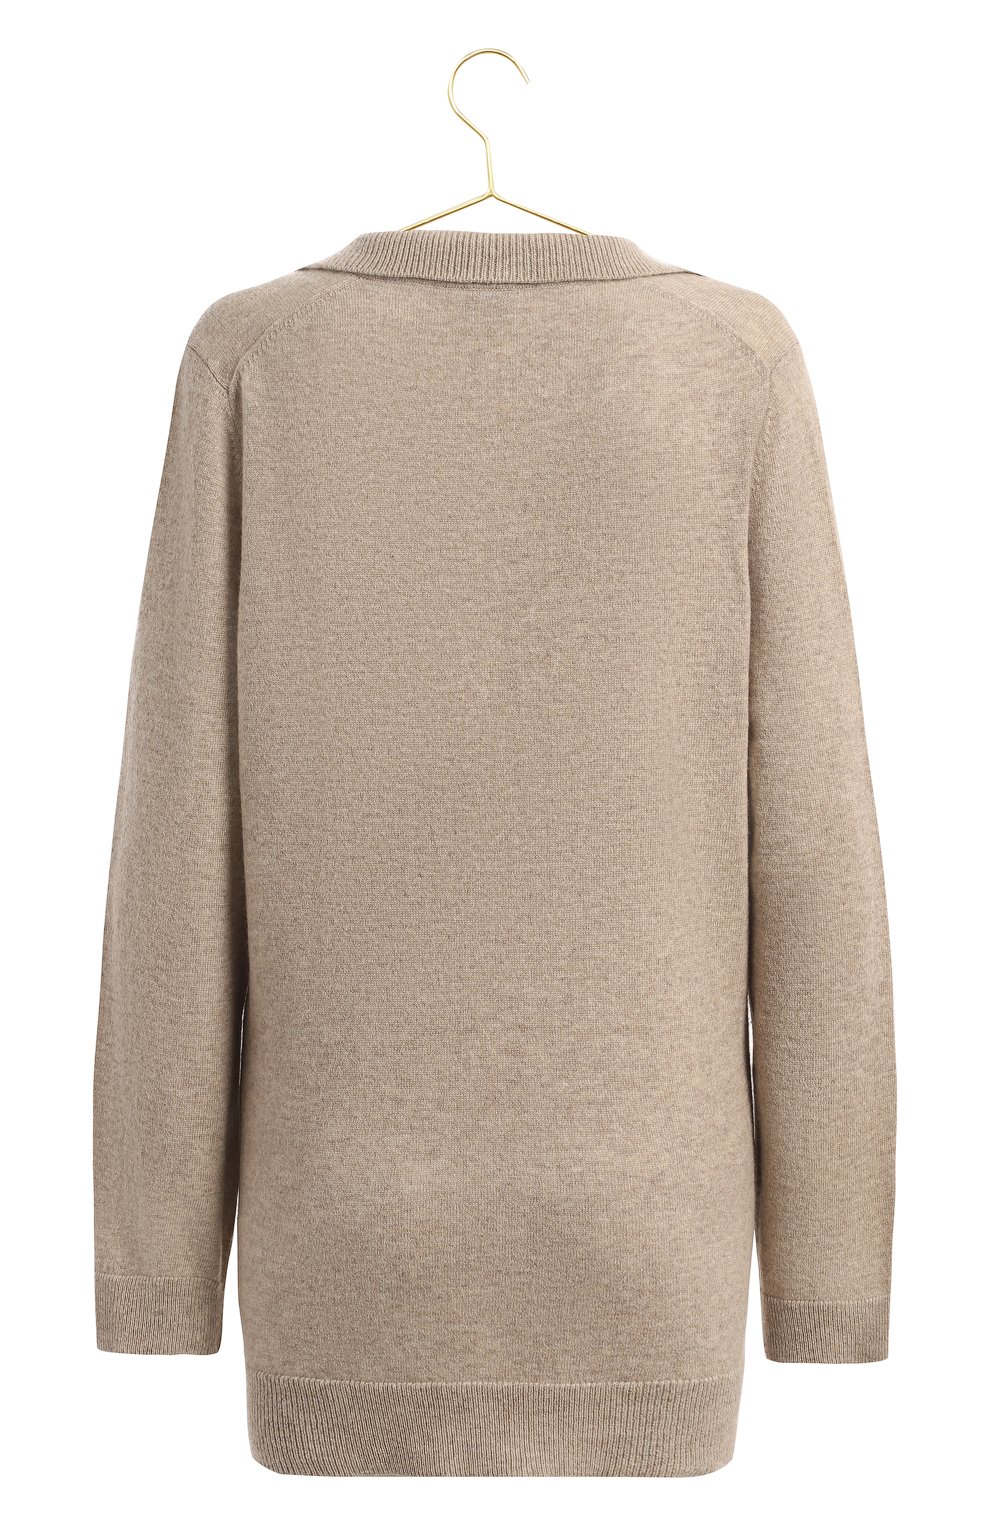 Кашемировый пуловер | FTC-Cashmere | Бежевый - 2